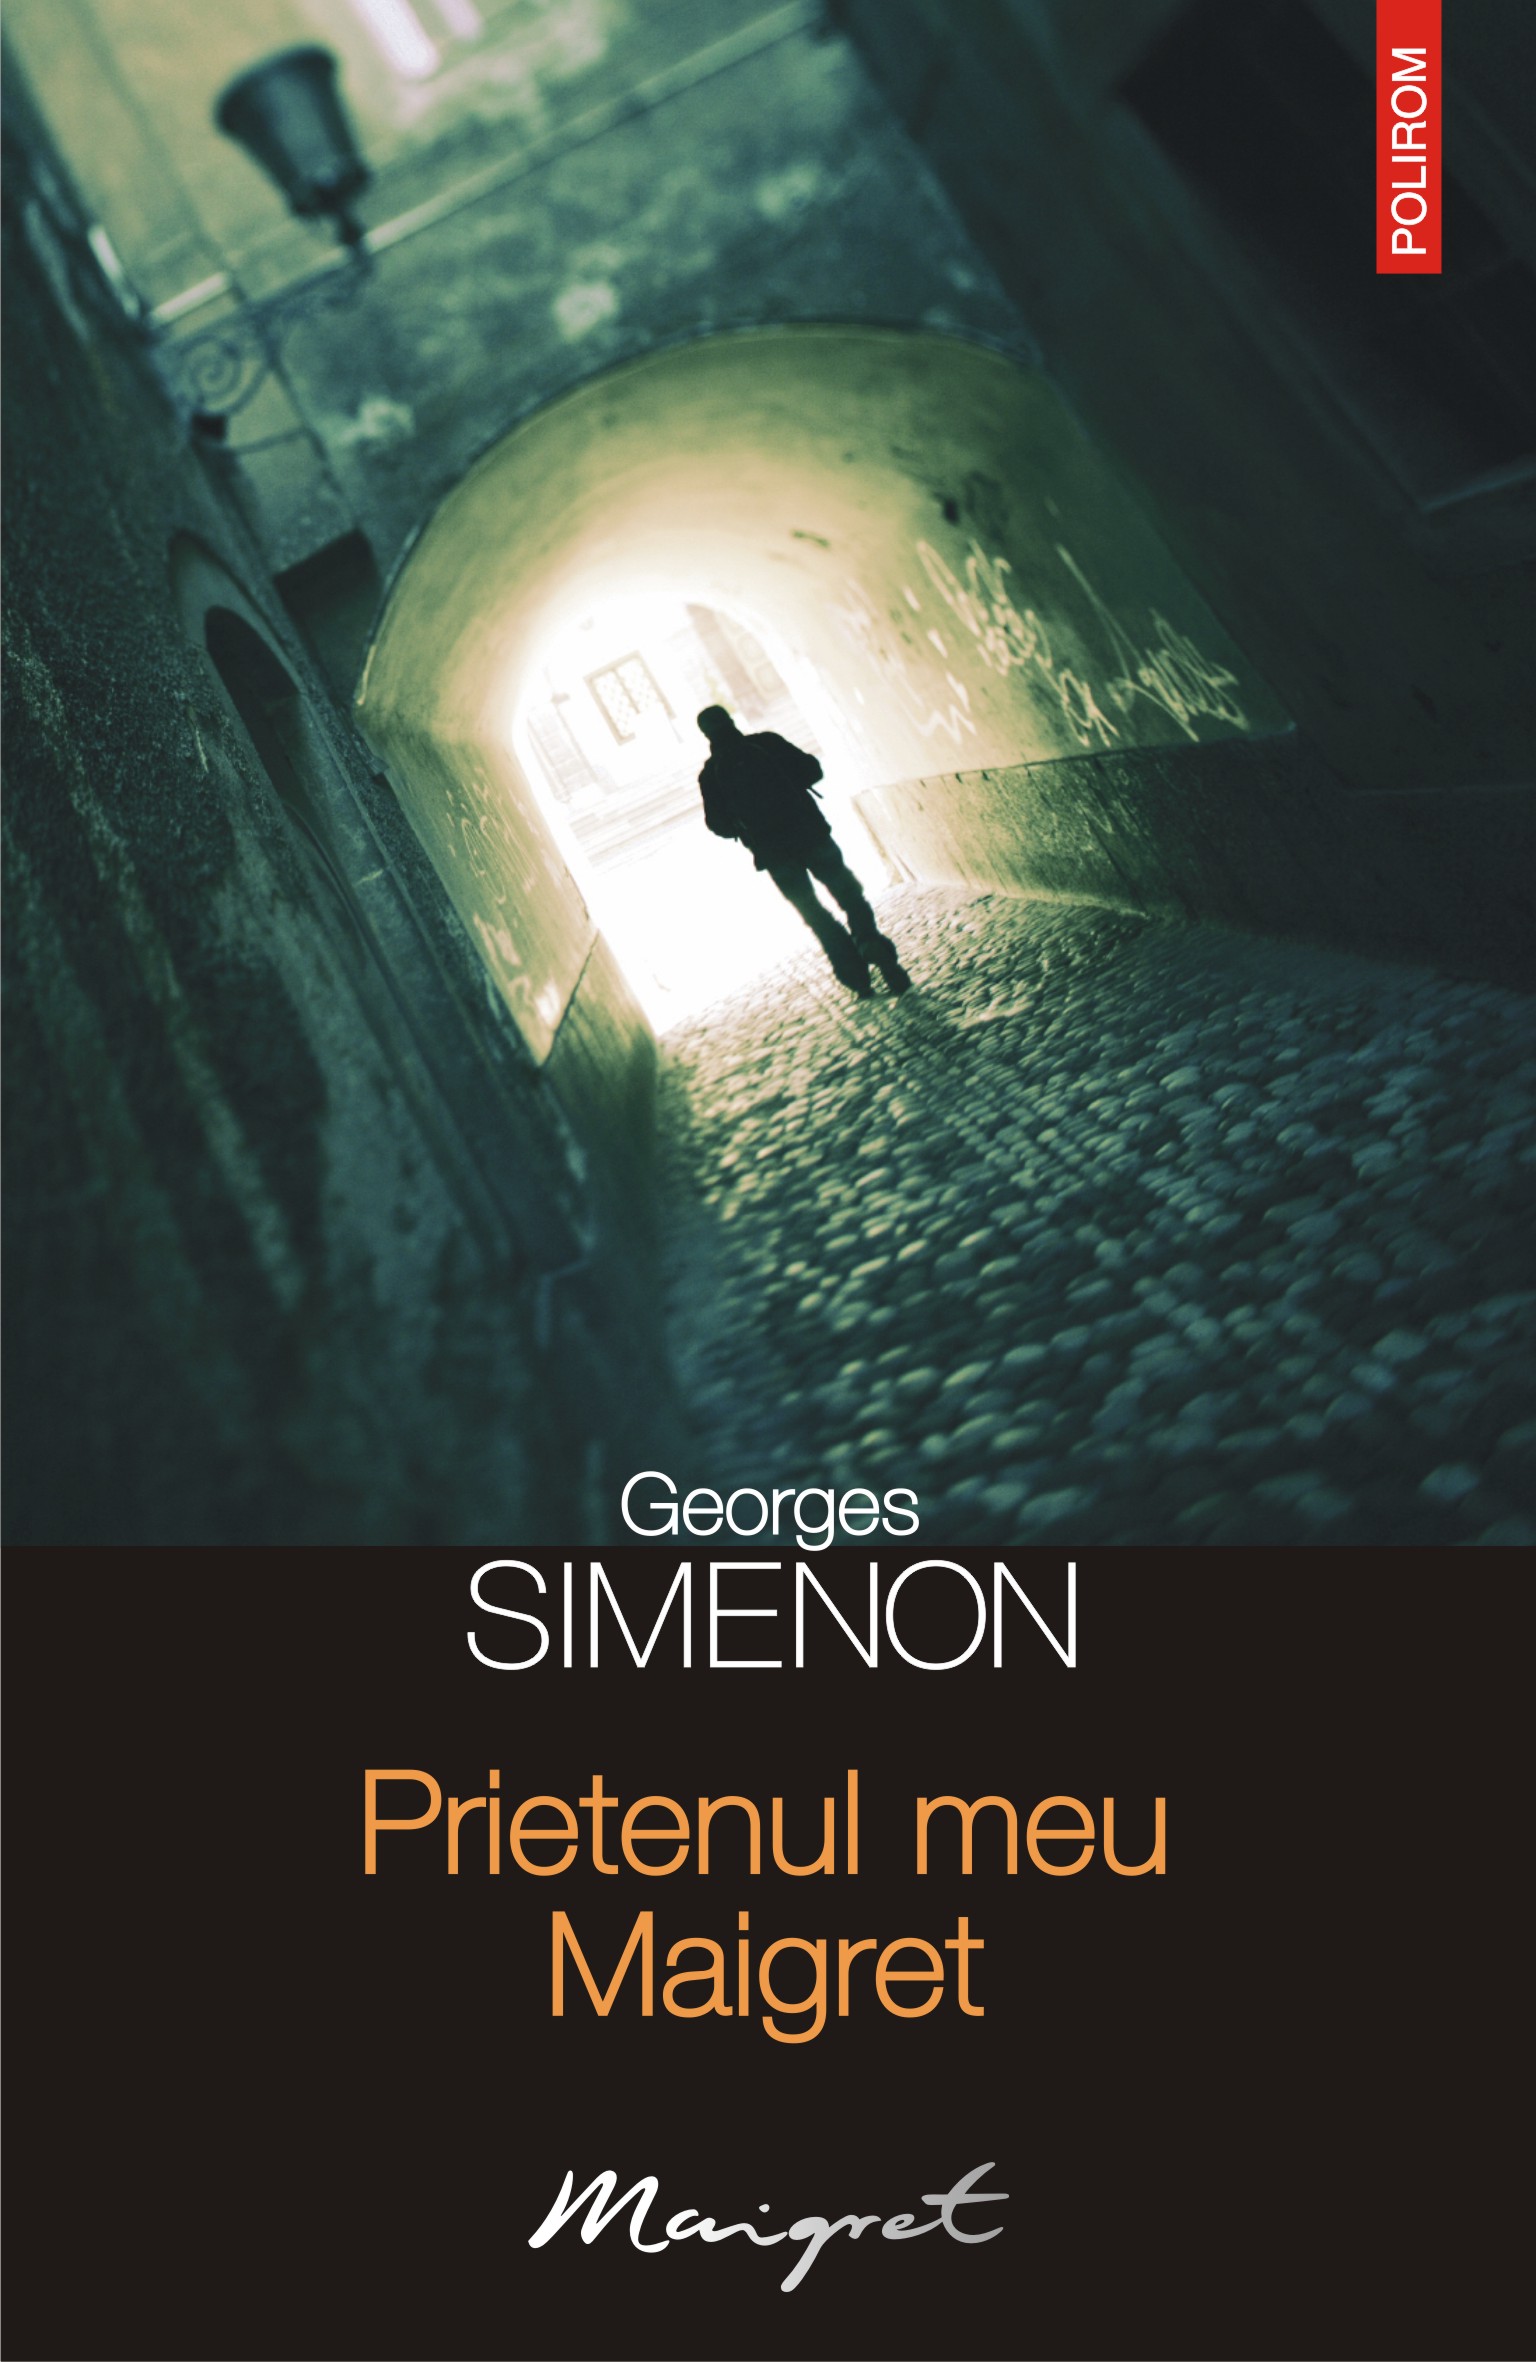 eBook Prietenul meu Maigret - Georges Simenon